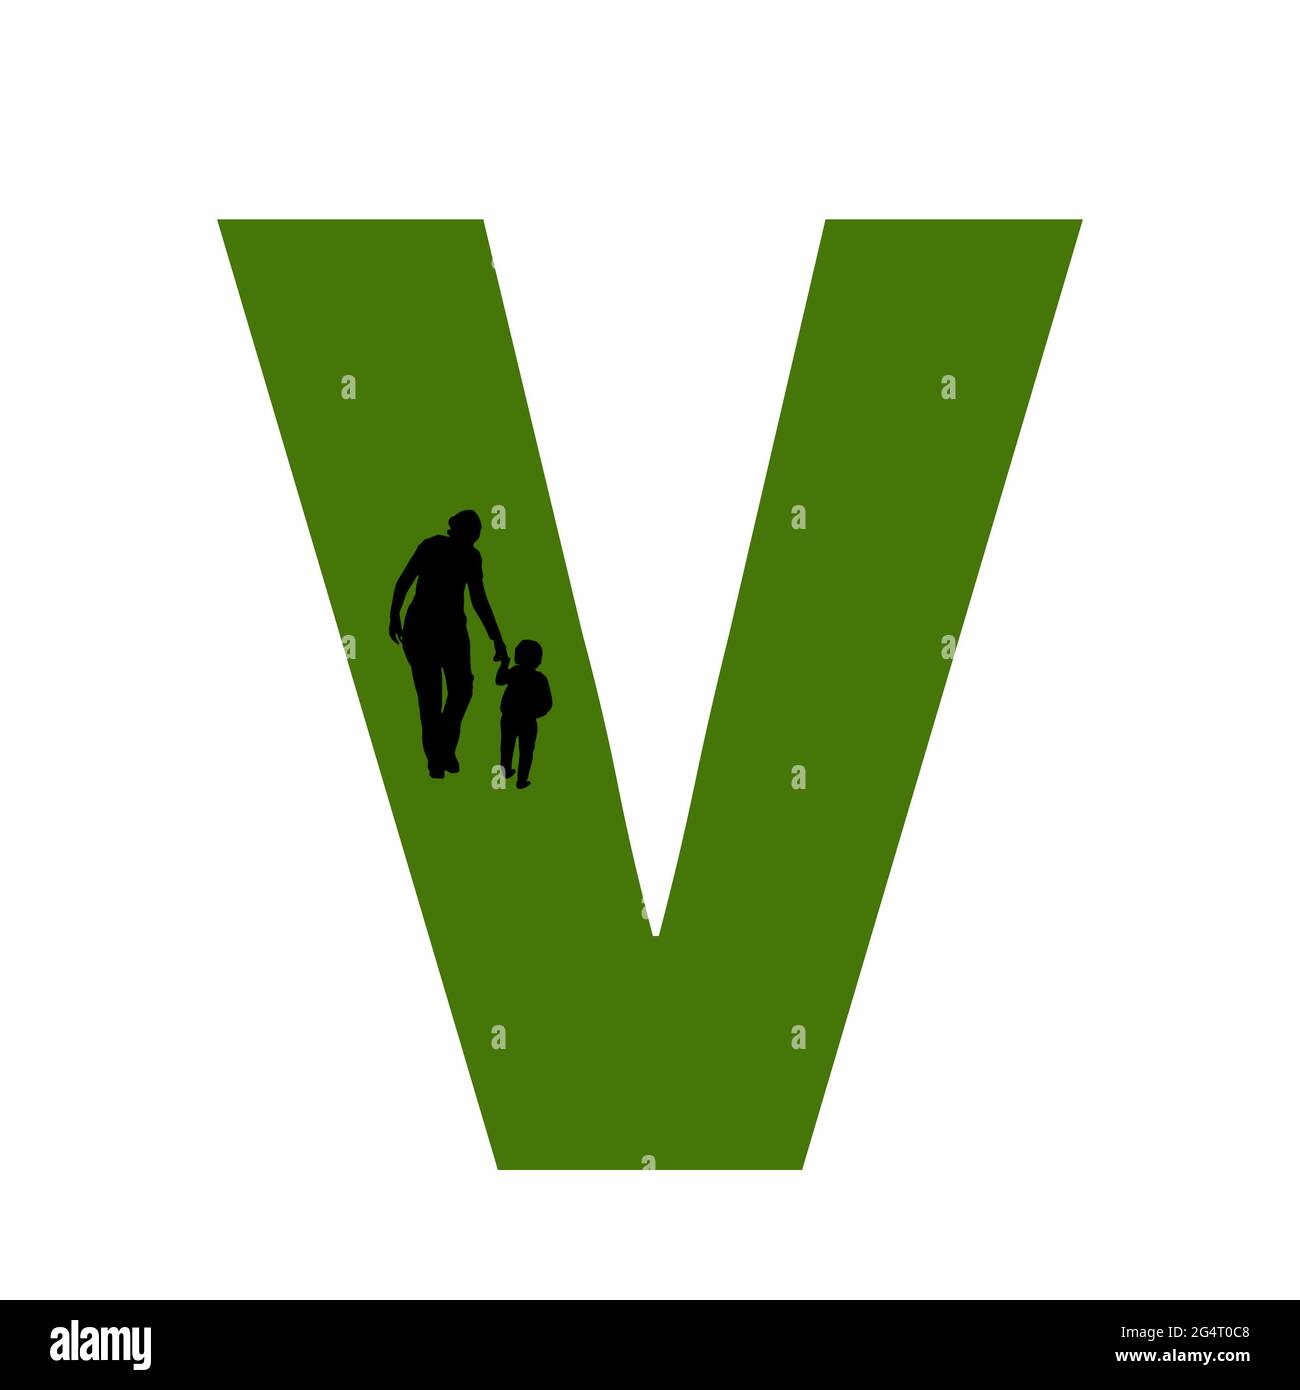 Lettera V dell'alfabeto fatta con la sagoma di una madre e di un bambino che cammina, in verde e nero Foto Stock